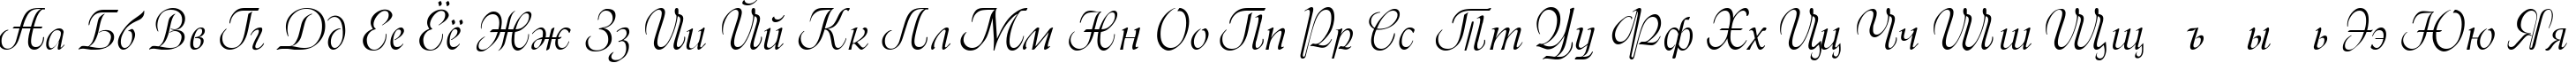 Пример написания русского алфавита шрифтом Menuet script